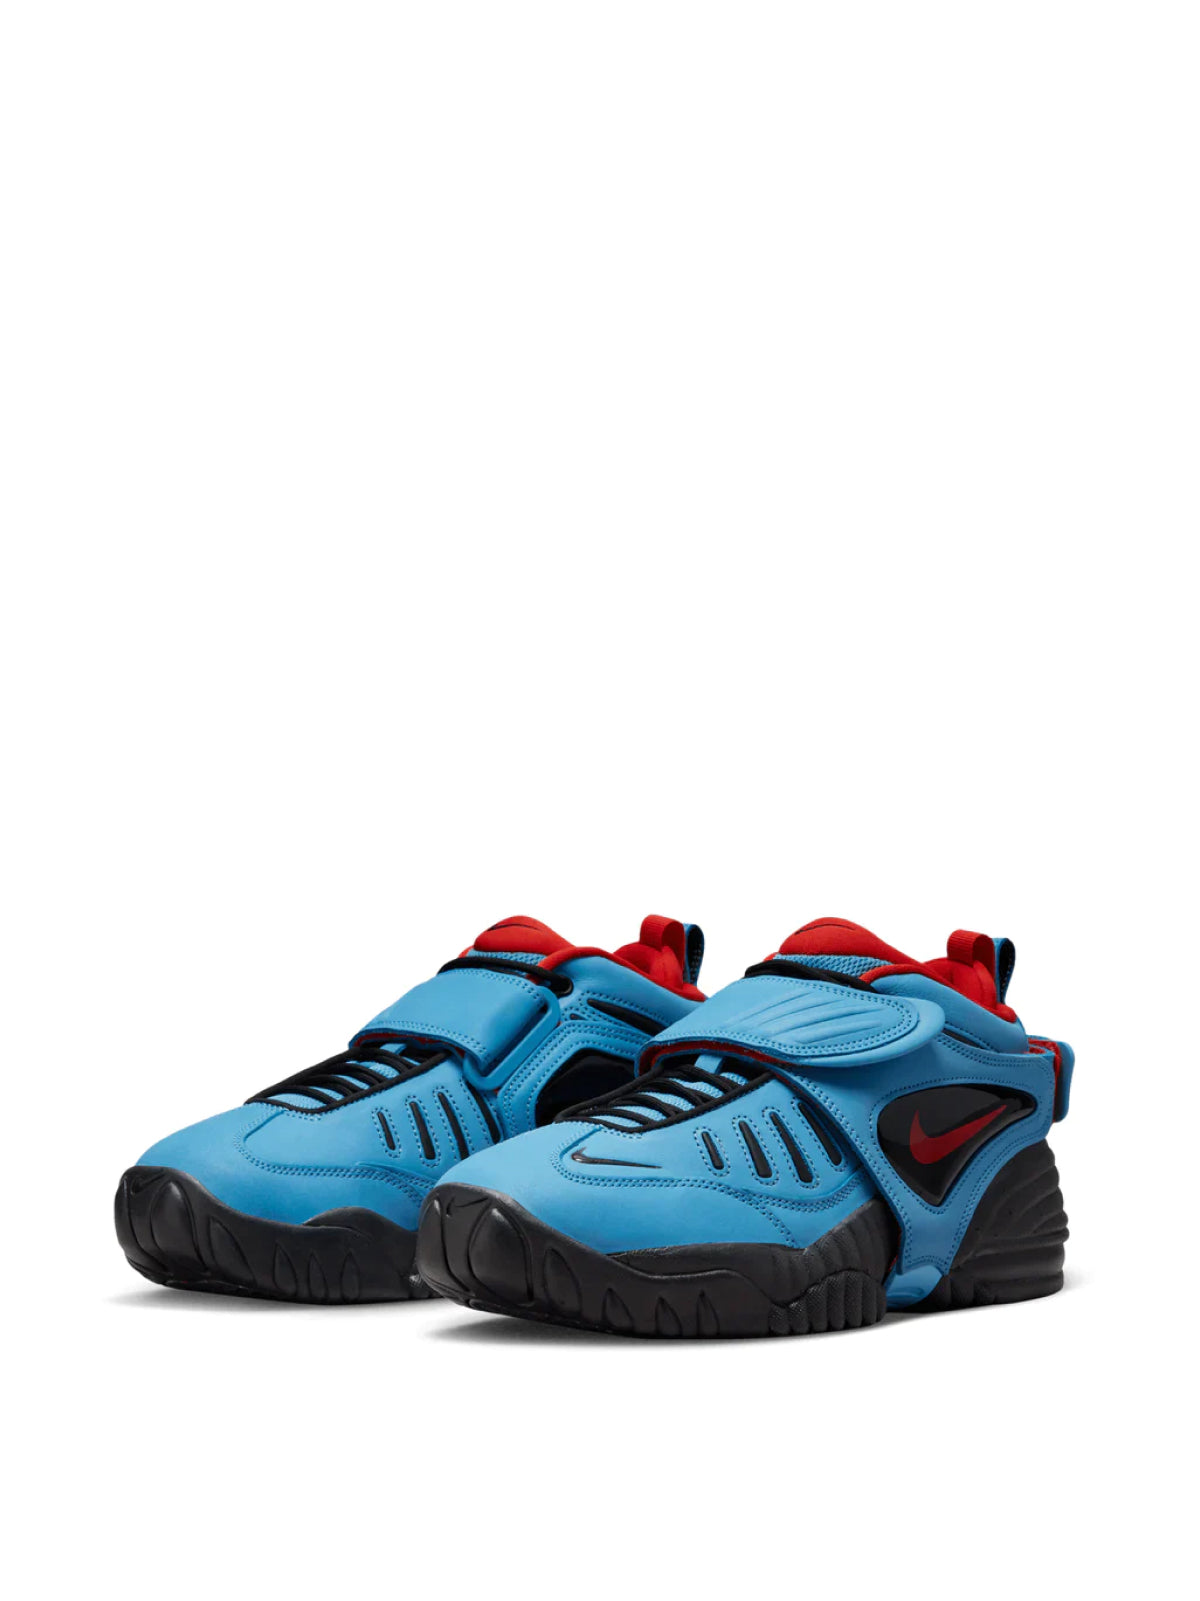 Nike-OUTLET-SALE-Air Adjust Force x Ambush Sneakers-ARCHIVIST